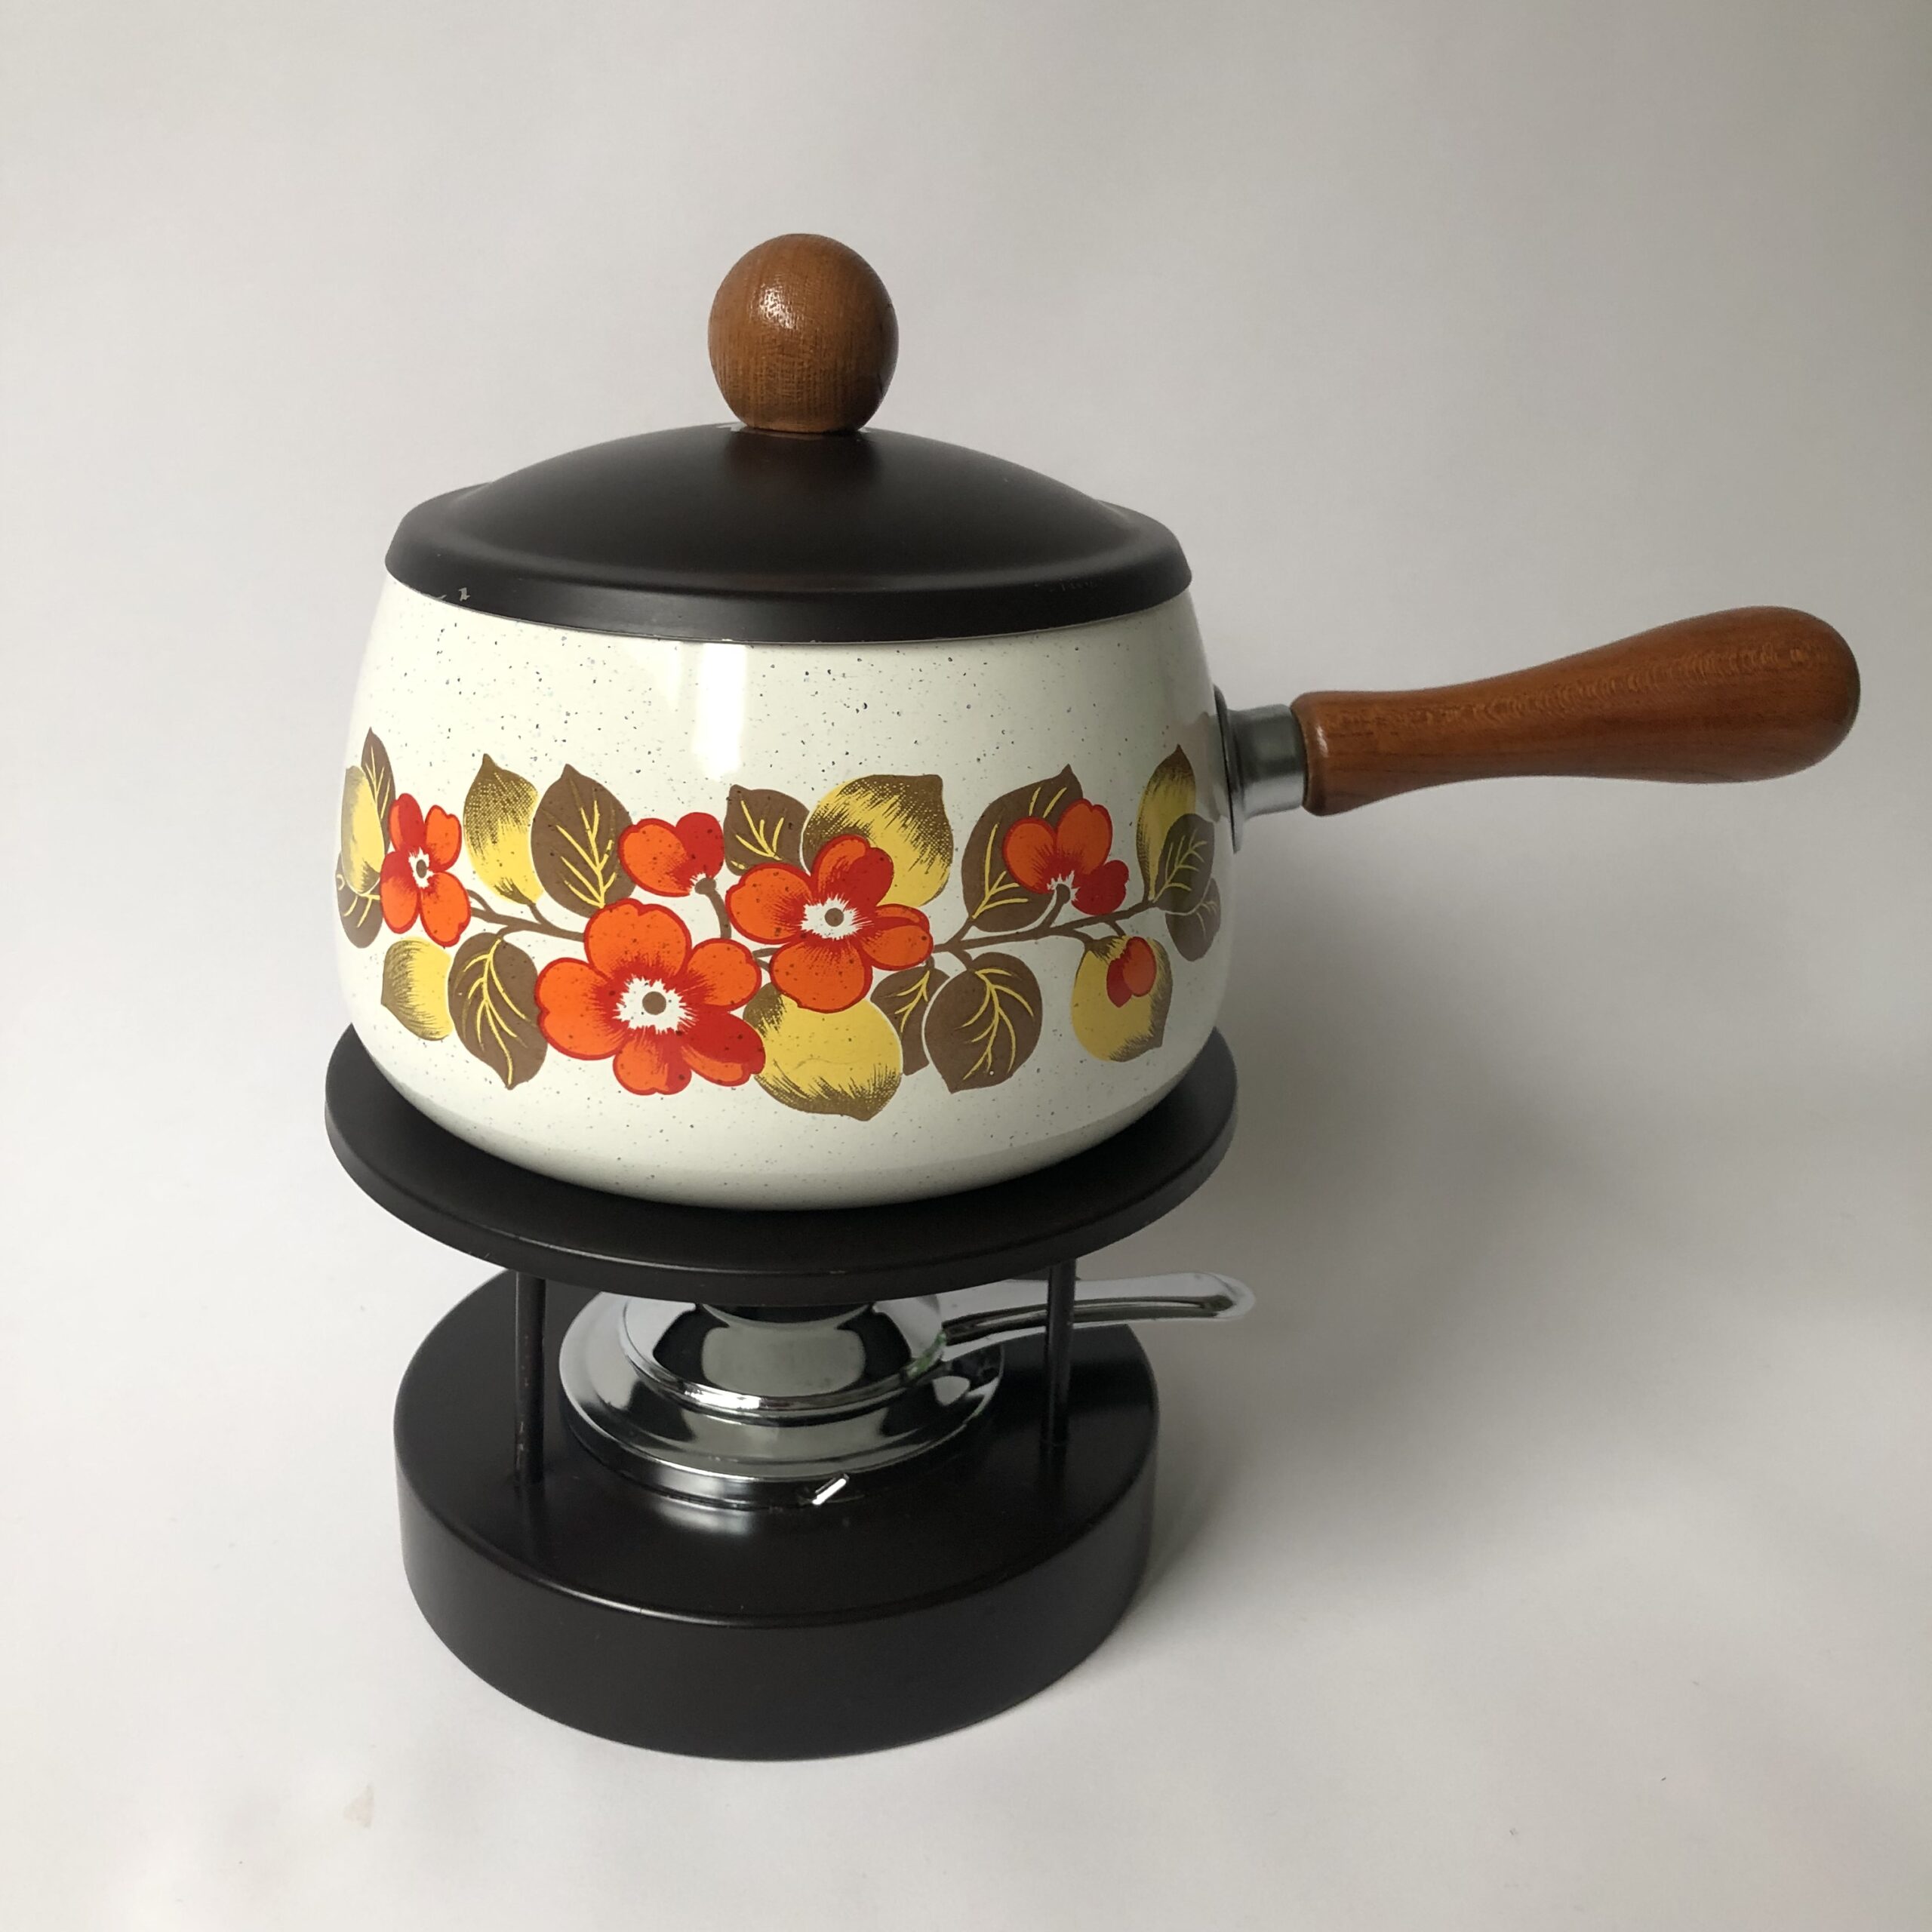 Vintage fondue set, bestaat uit een emaille fonduepan met houten greep/knop en ijzeren onderstel met een brander